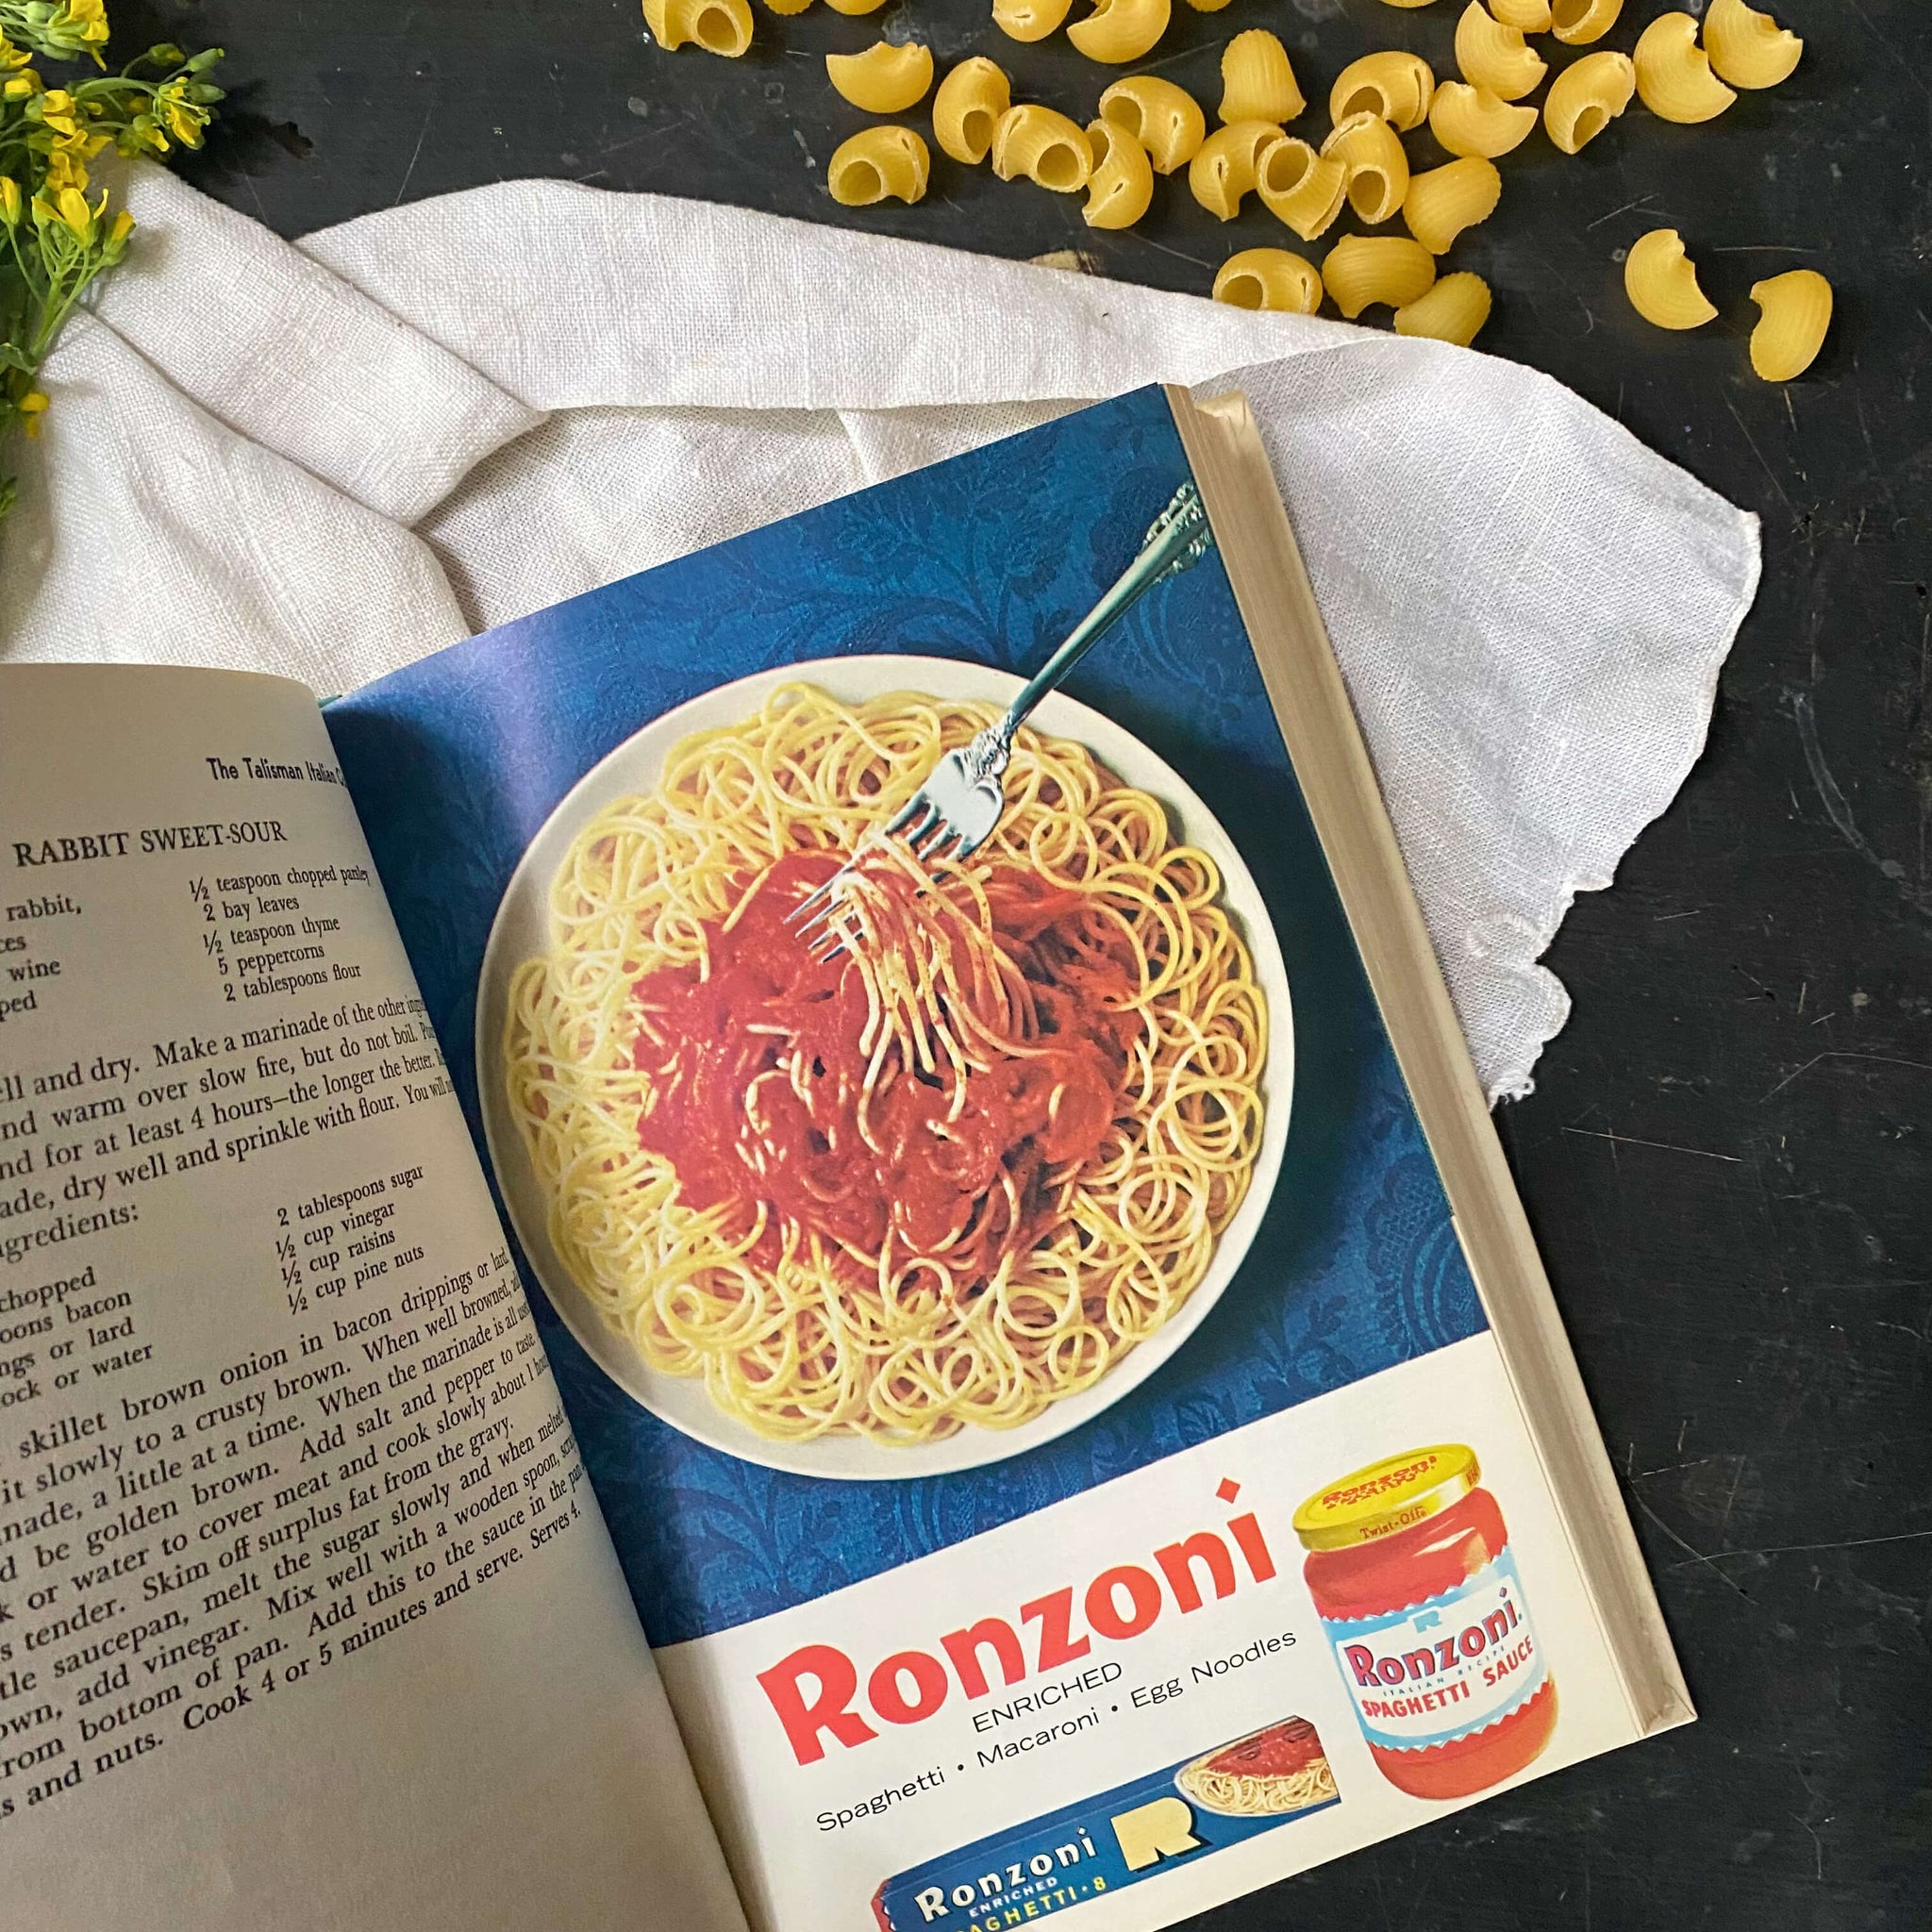 The Talisman Italian Cook Book by Ada Boni - 1974 Ronzoni Macaroni Edition